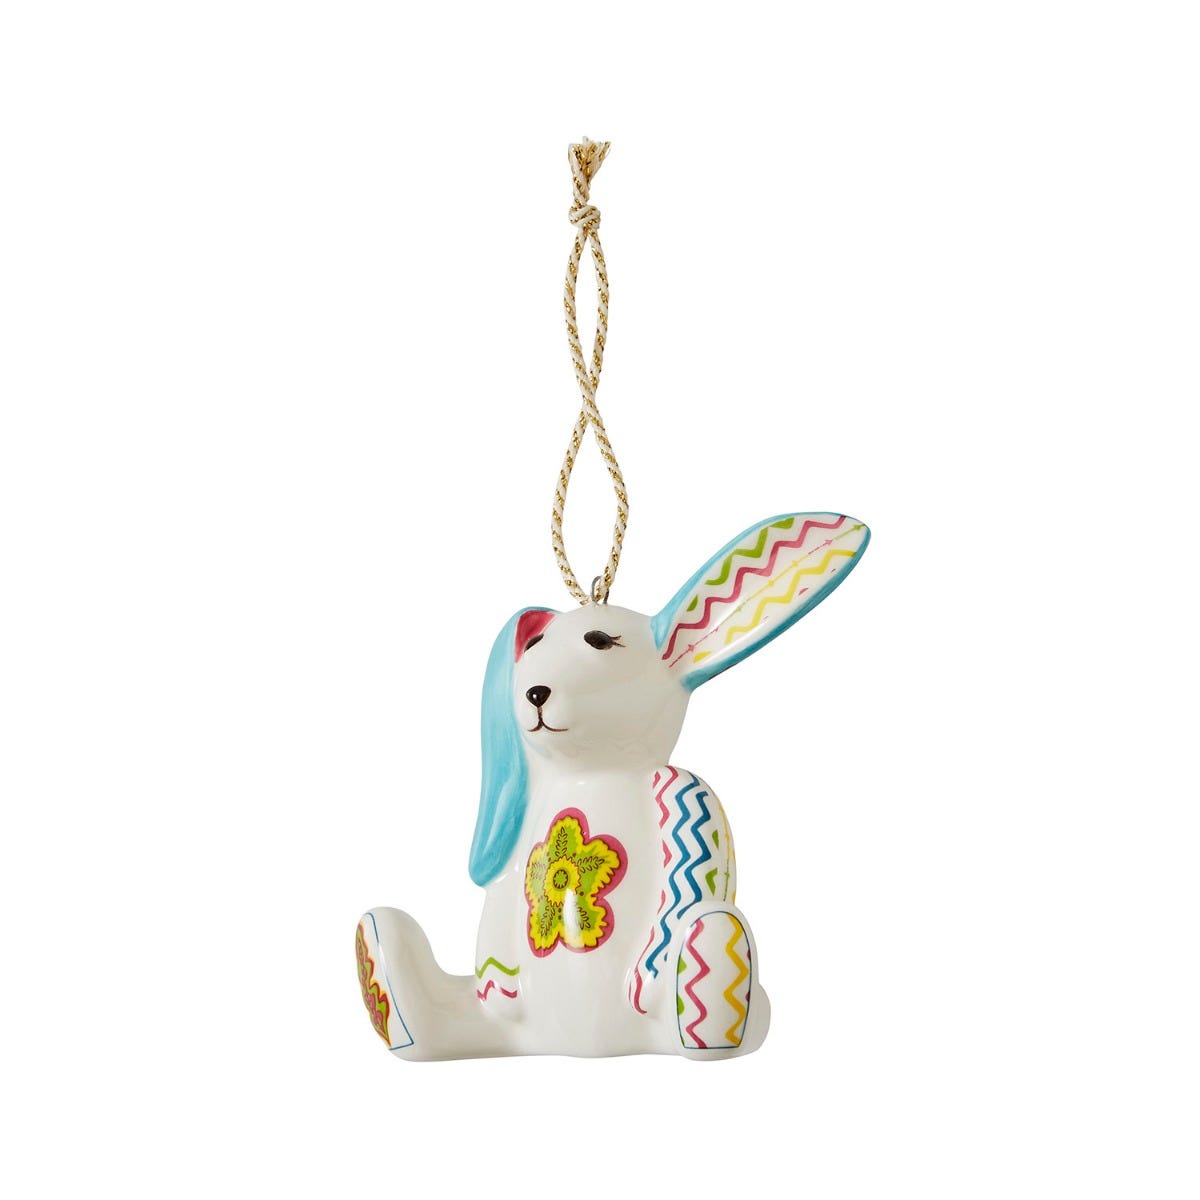 Kit Kemp Minnie Rabbit Ornament